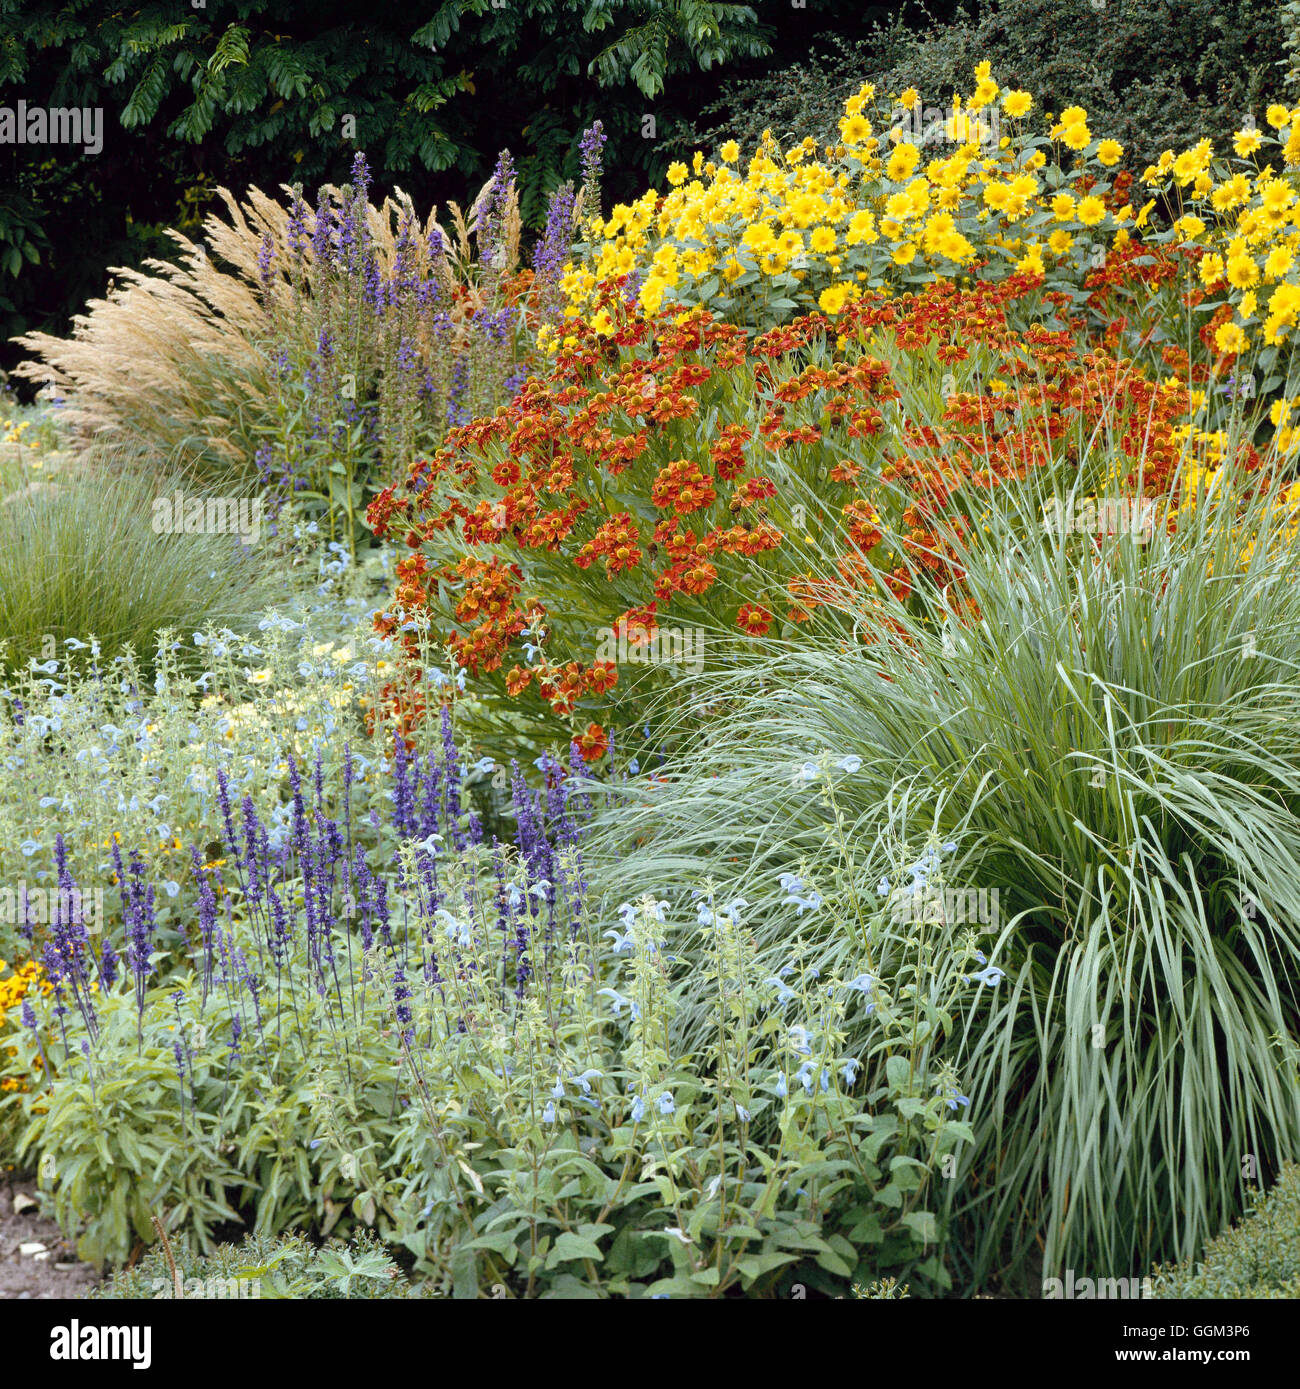 Jardin de plantes vivaces - à la fin d'août avec les graminées sauges Lobelia Helenium et Heliopsis. Le PGN017009 Cre Obligatoire Banque D'Images